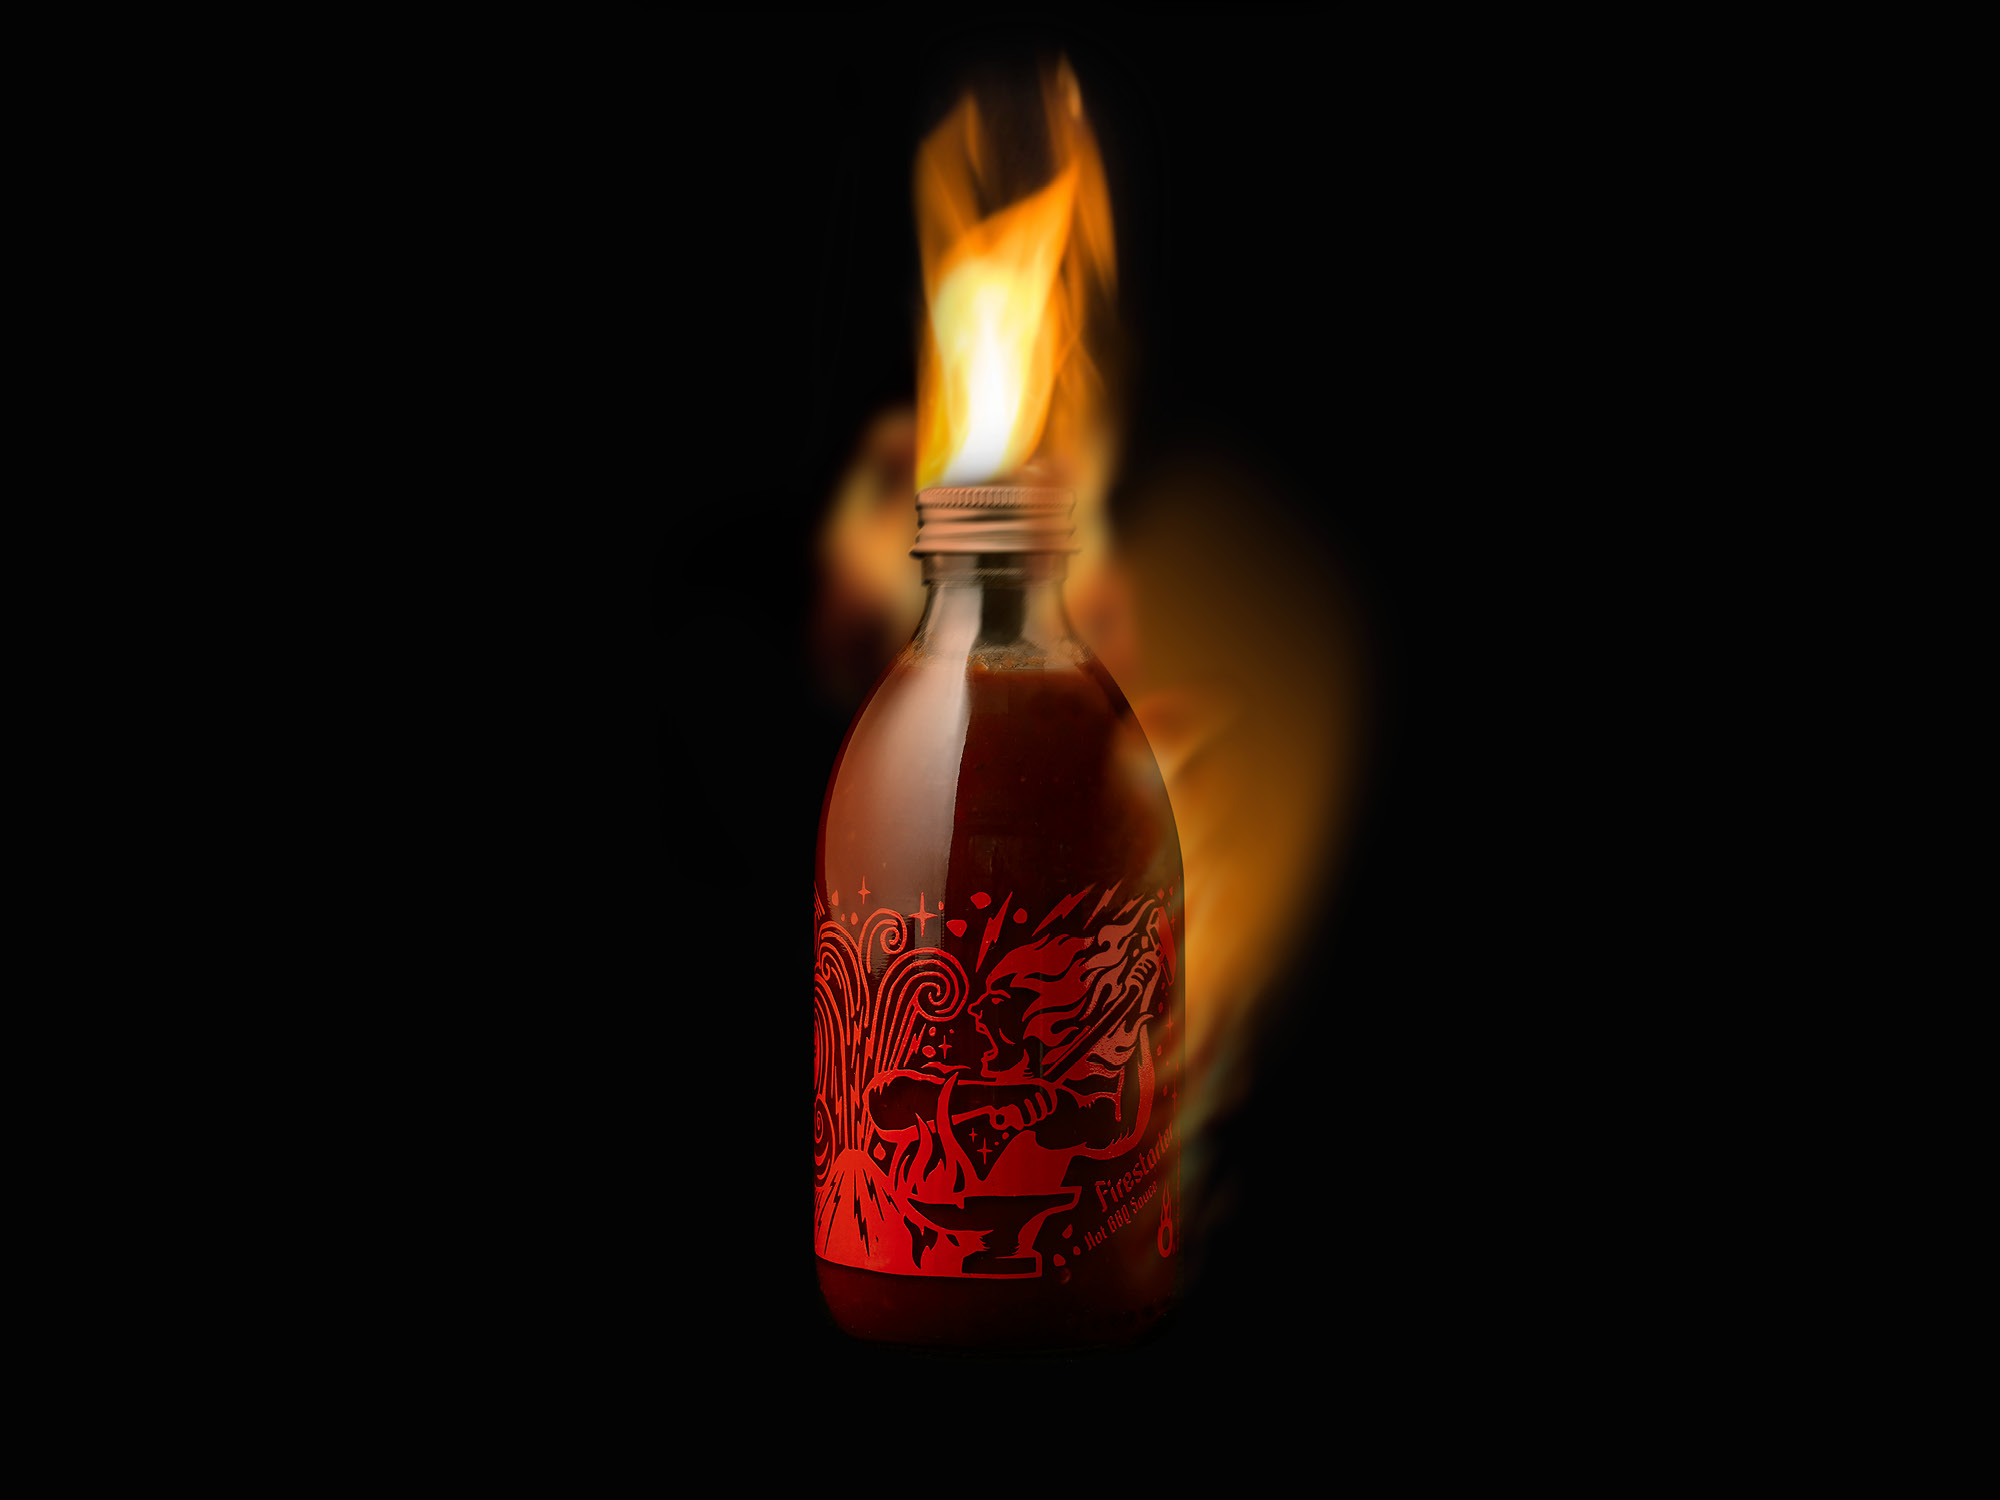 onfire design hot sauce packaging design branding 6